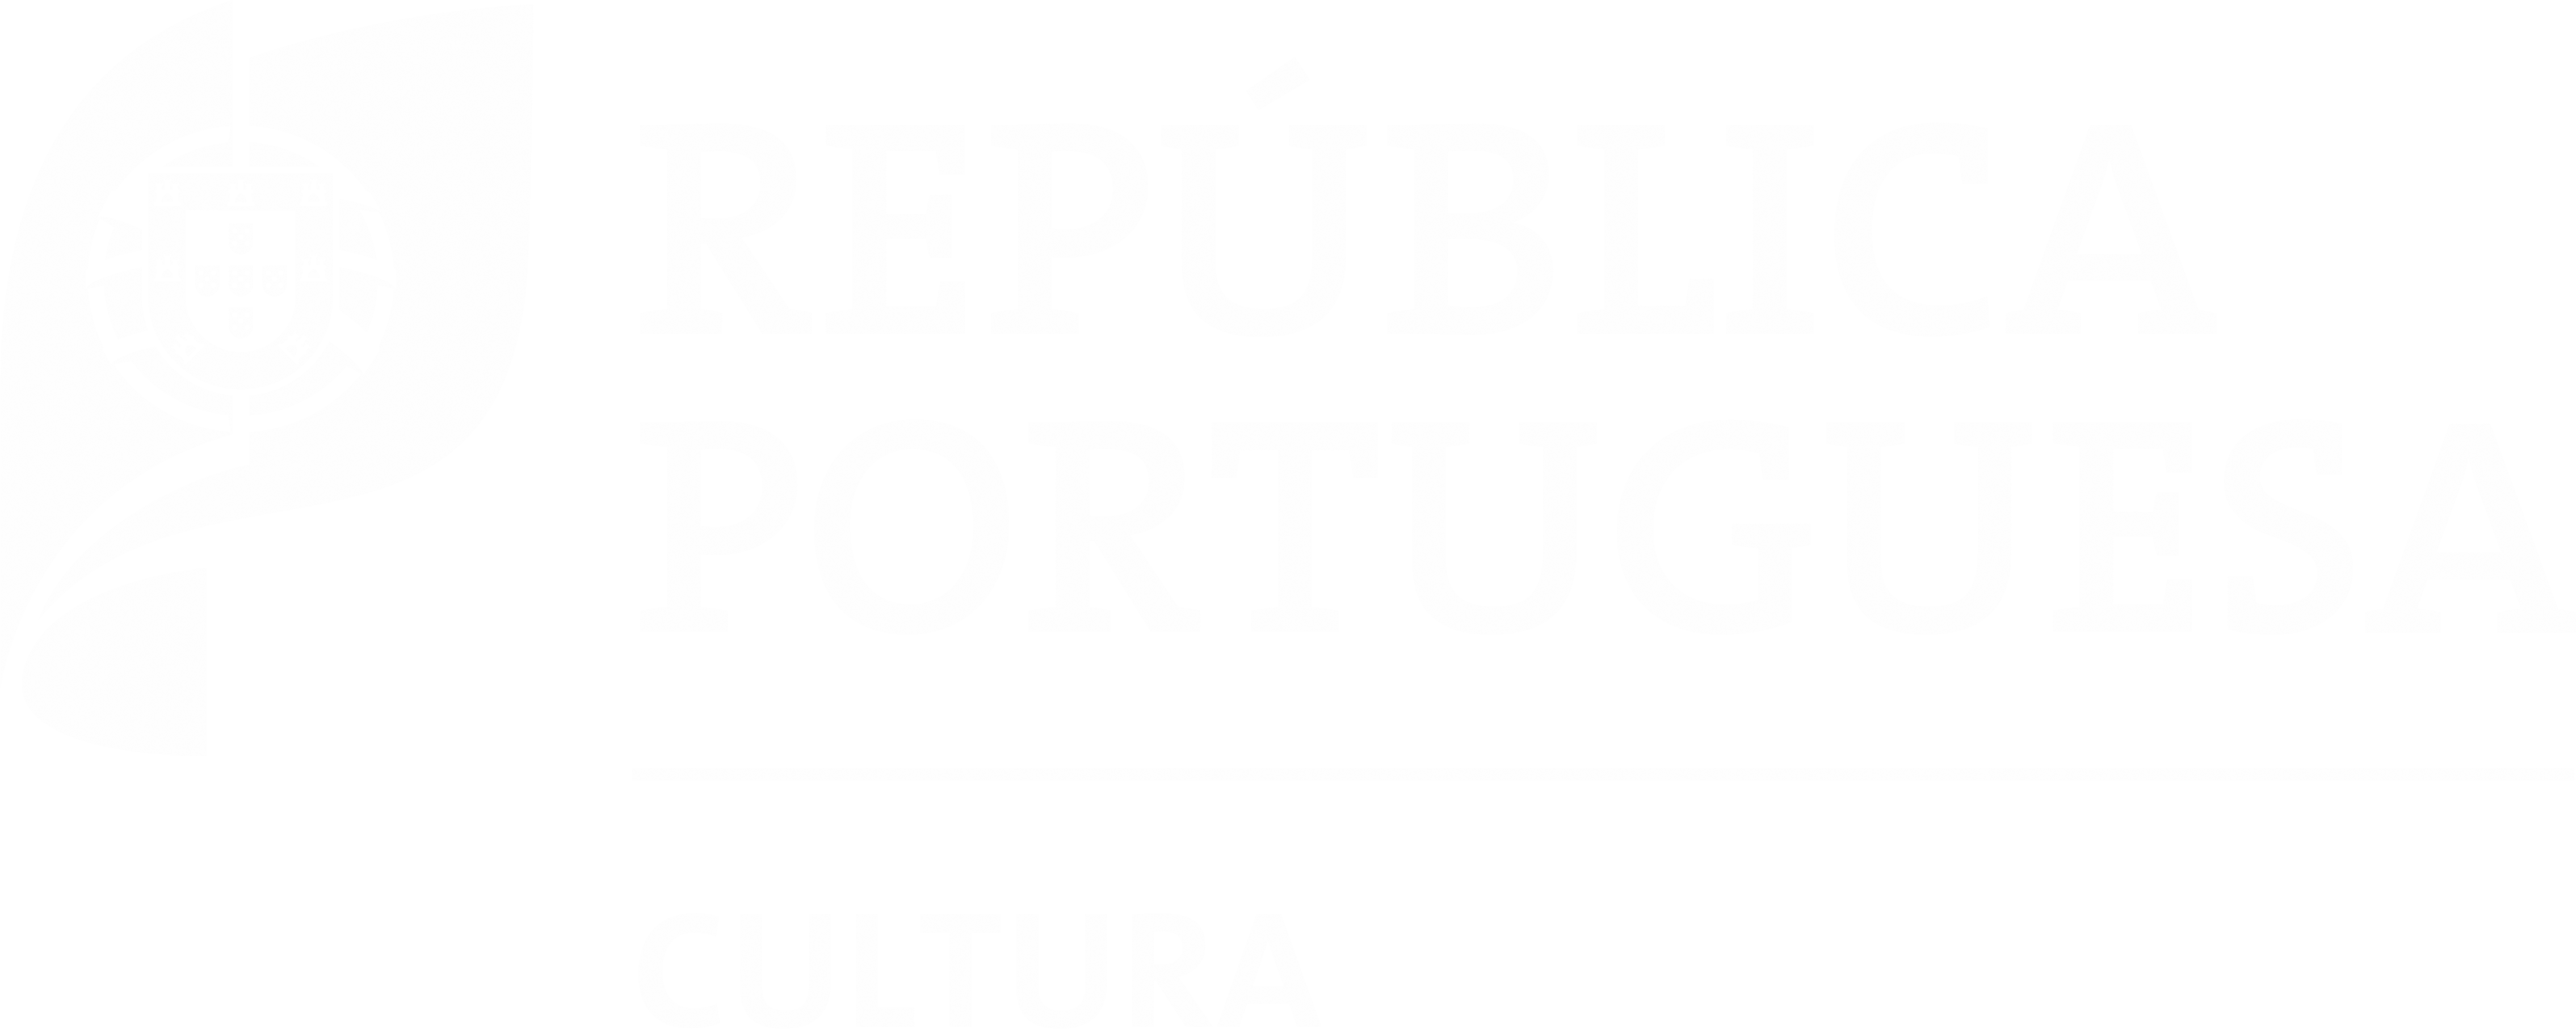 República Portuguesa - Cultura